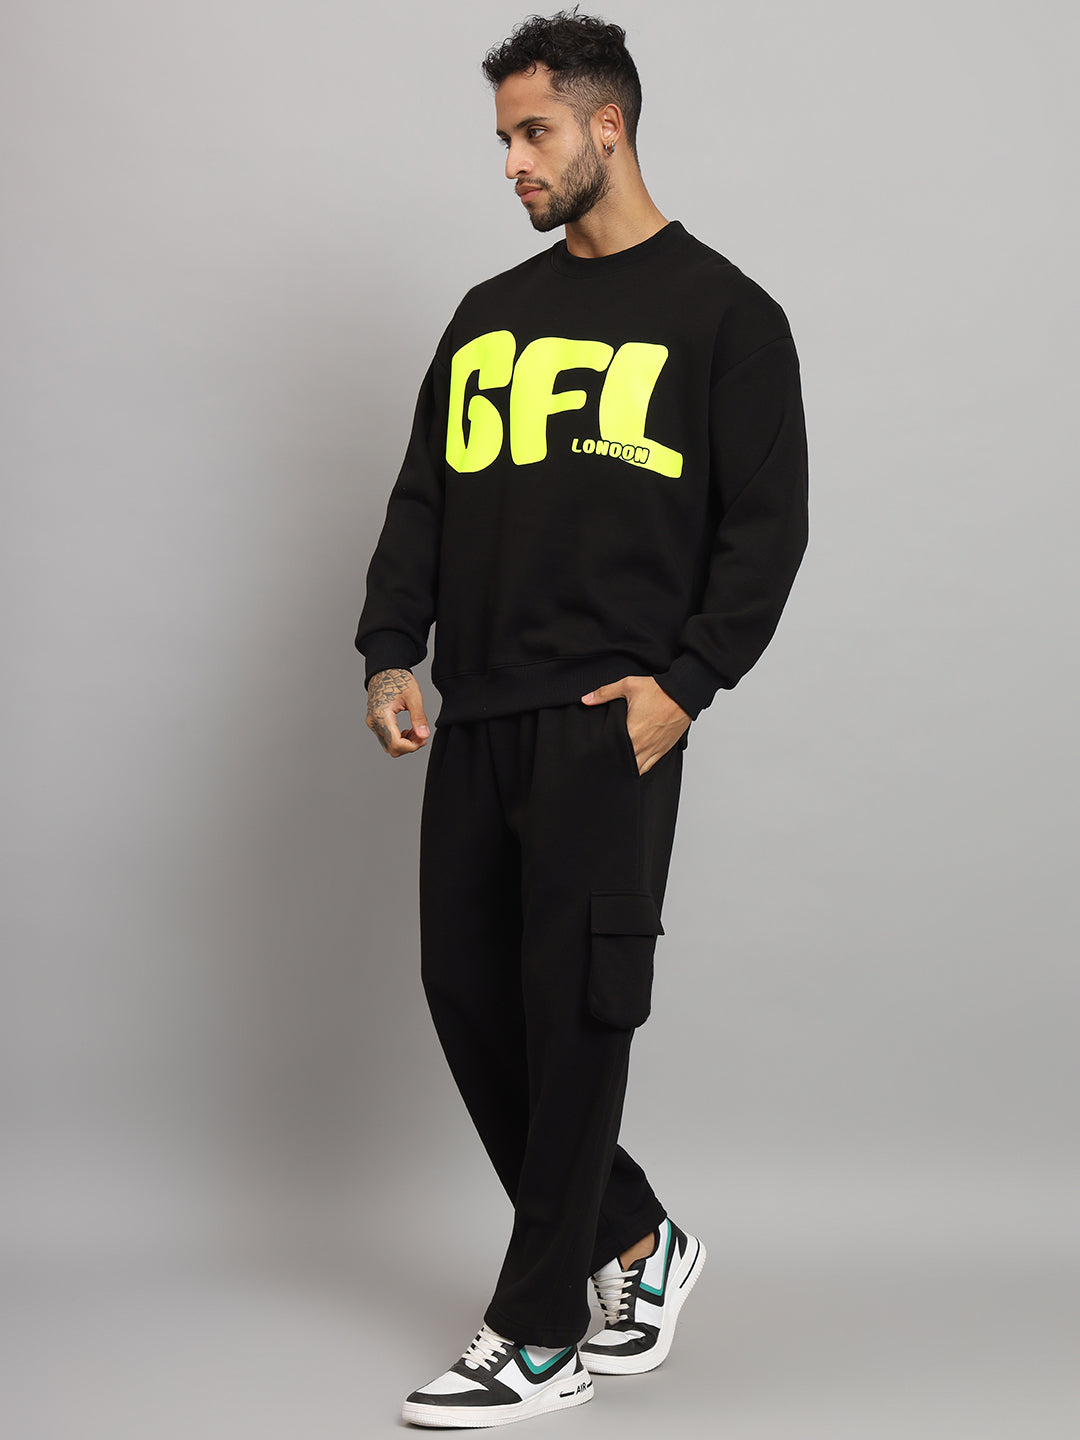 Griffel Men Oversized Fit GFL Print Round Neck 100% Cotton Fleece Black Tracksuit - griffel